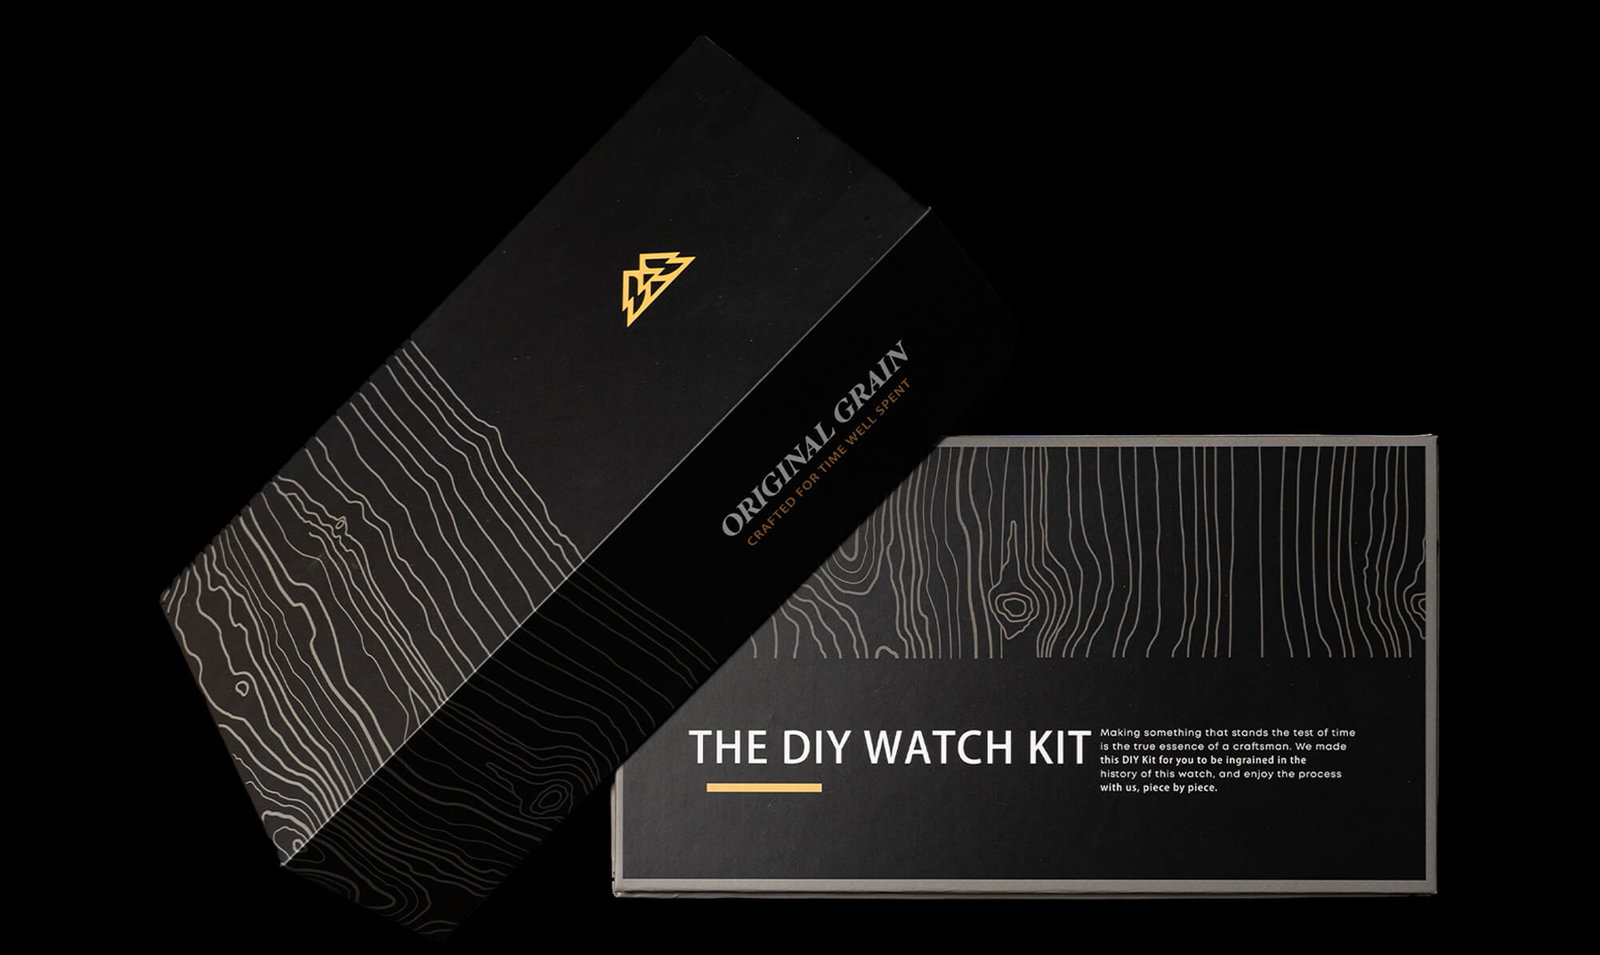 Original Grain's DIY Watch Kit Box